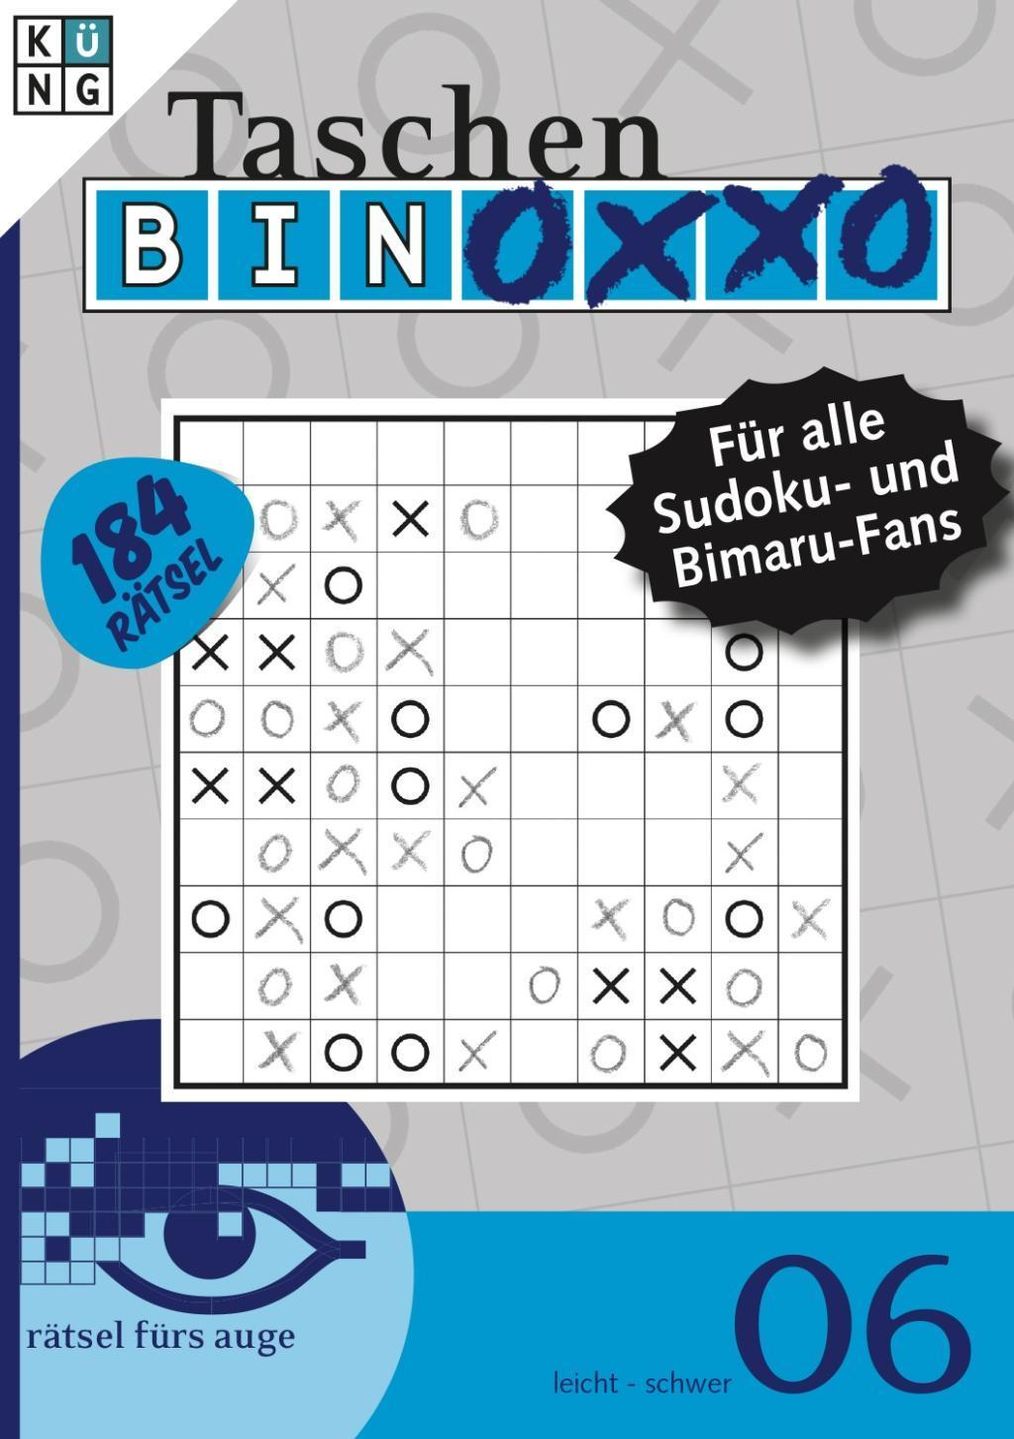 Taschen-Binoxxo-Rätsel Buch bei Weltbild.ch online bestellen